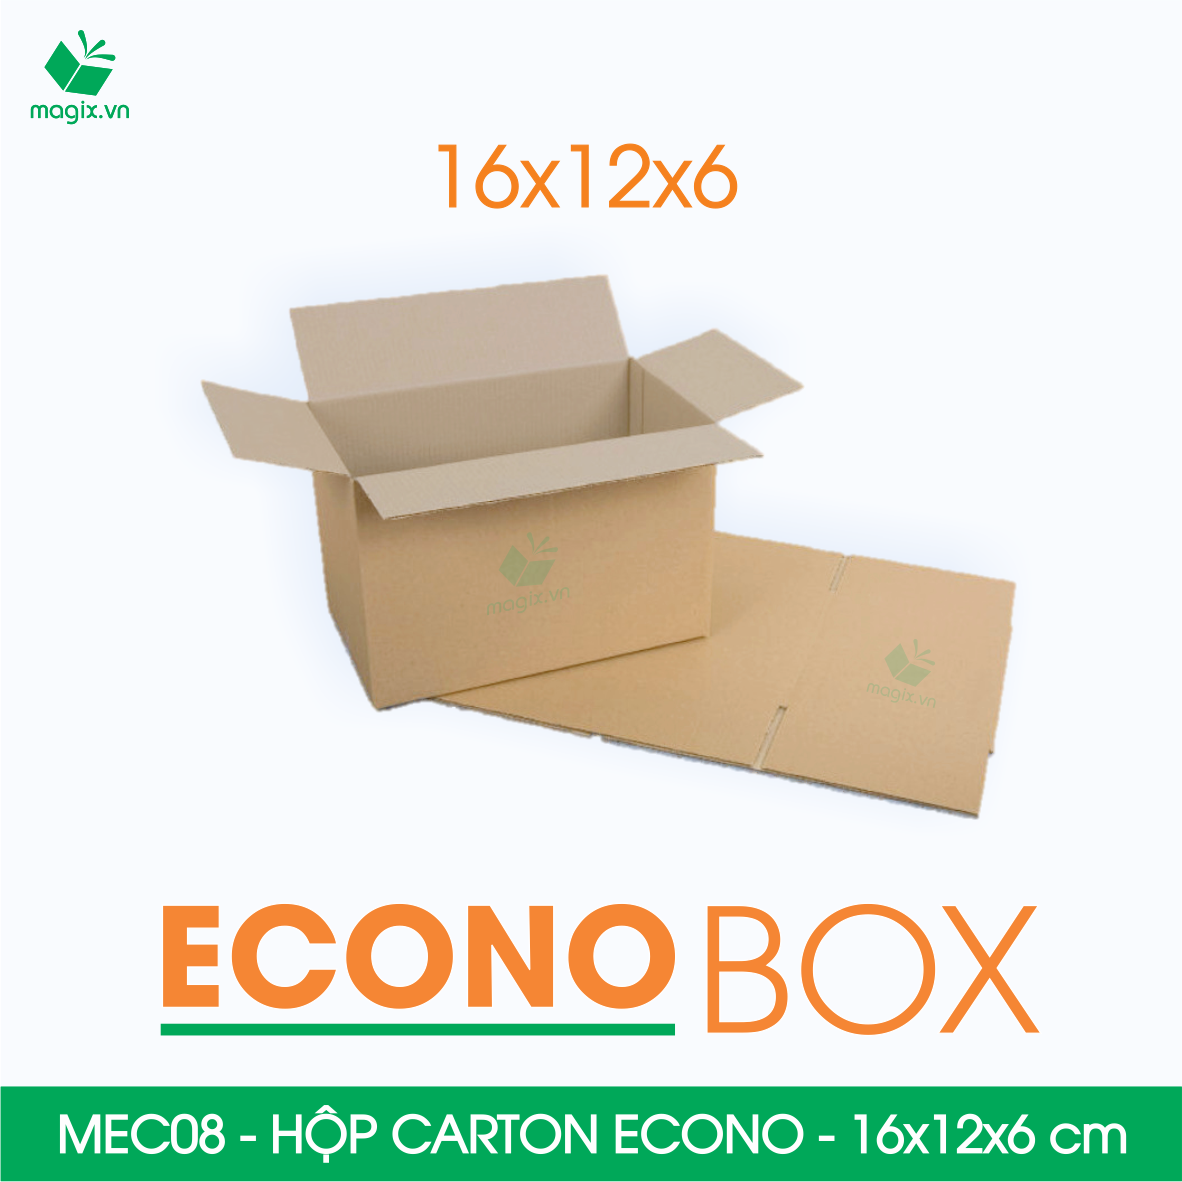 MEC08 - 16x12x6 cm - Combo 100 thùng hộp carton trơn siêu tiết kiệm ECONO